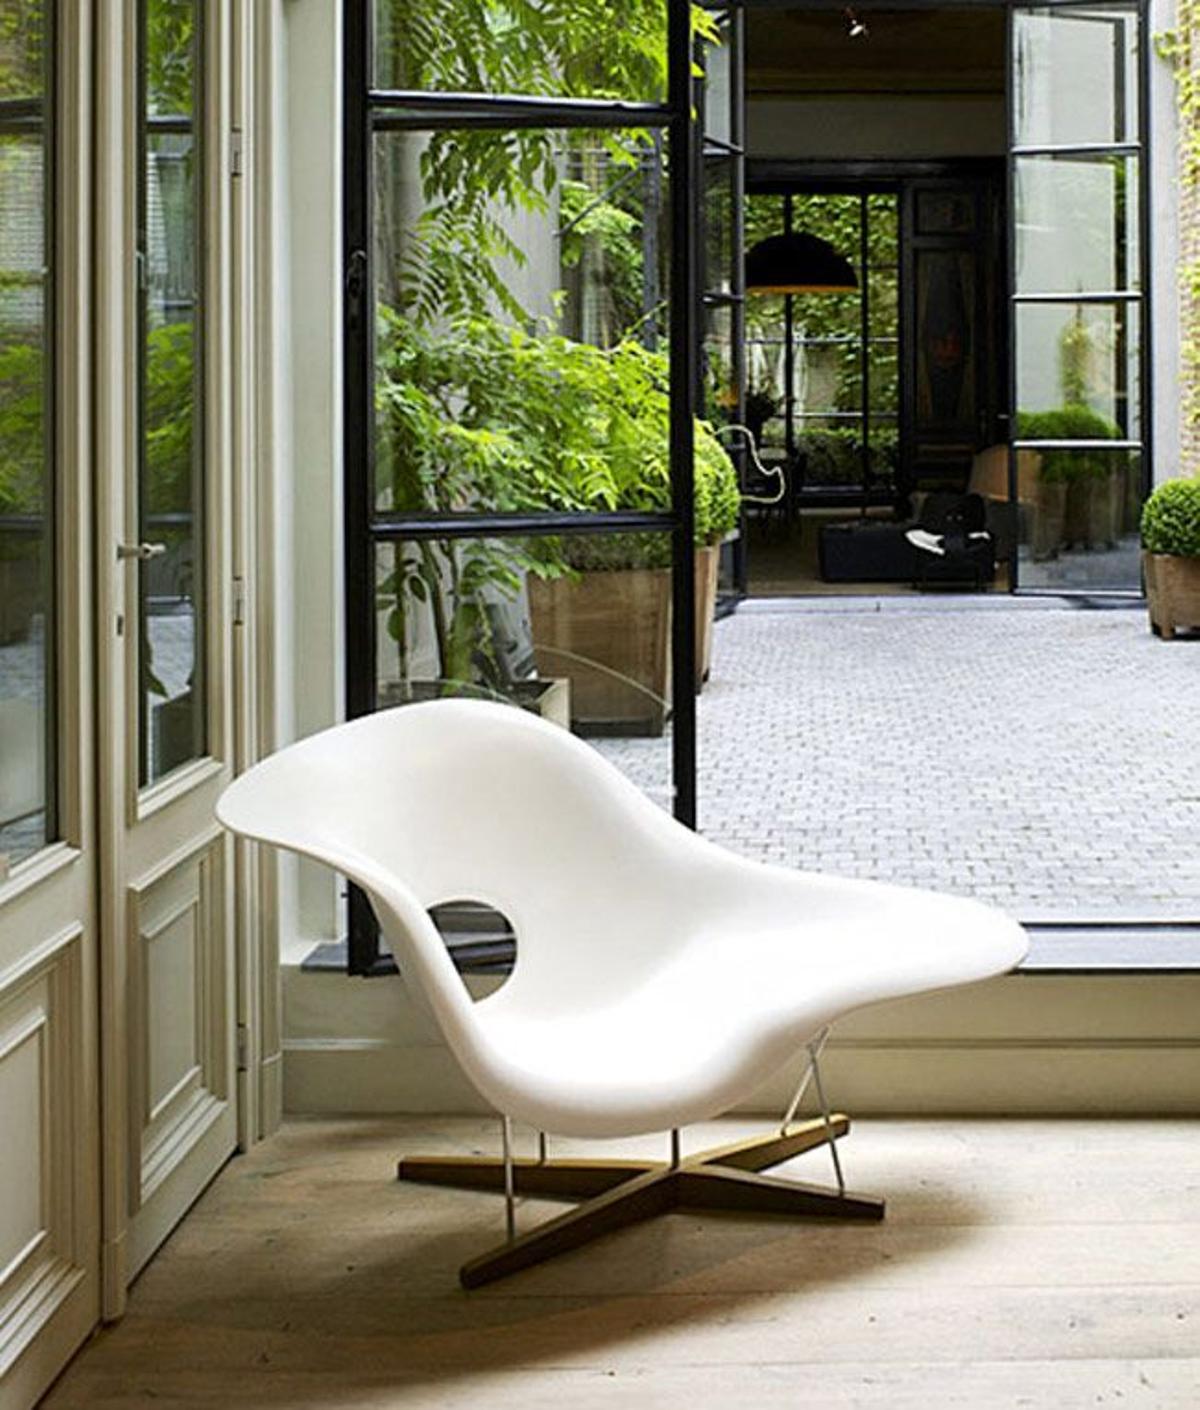 Rebajas de decoración: silla 'La Chaise' de los hermanos Eames